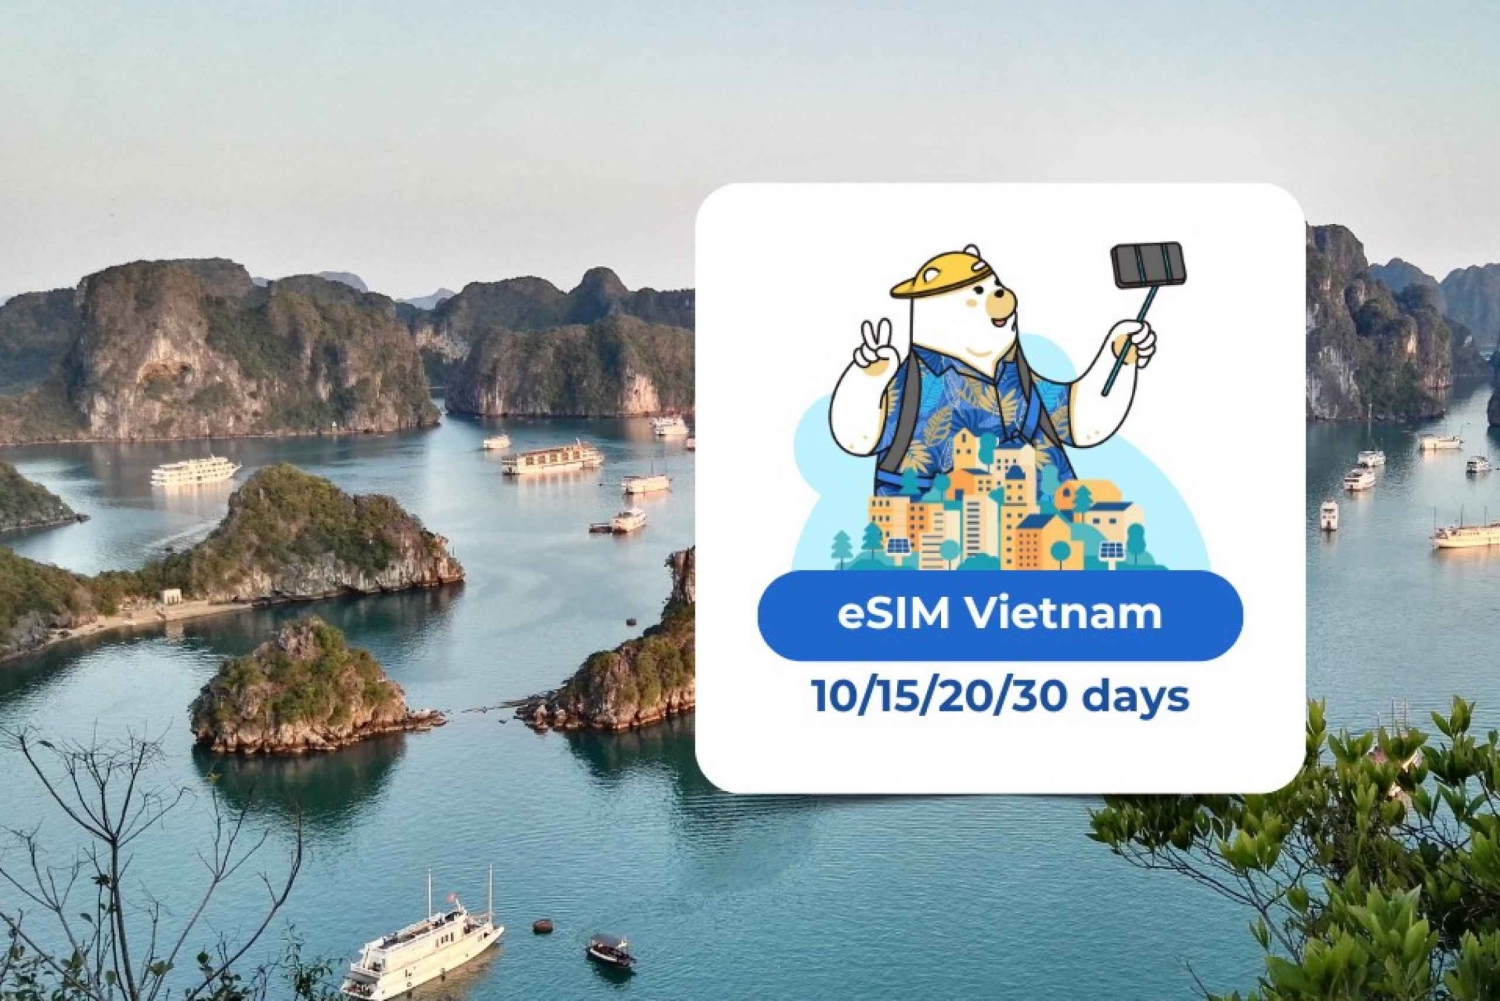 Vietnam eSIM: Plan de datos móviles en itinerancia 10/15/20/30 días